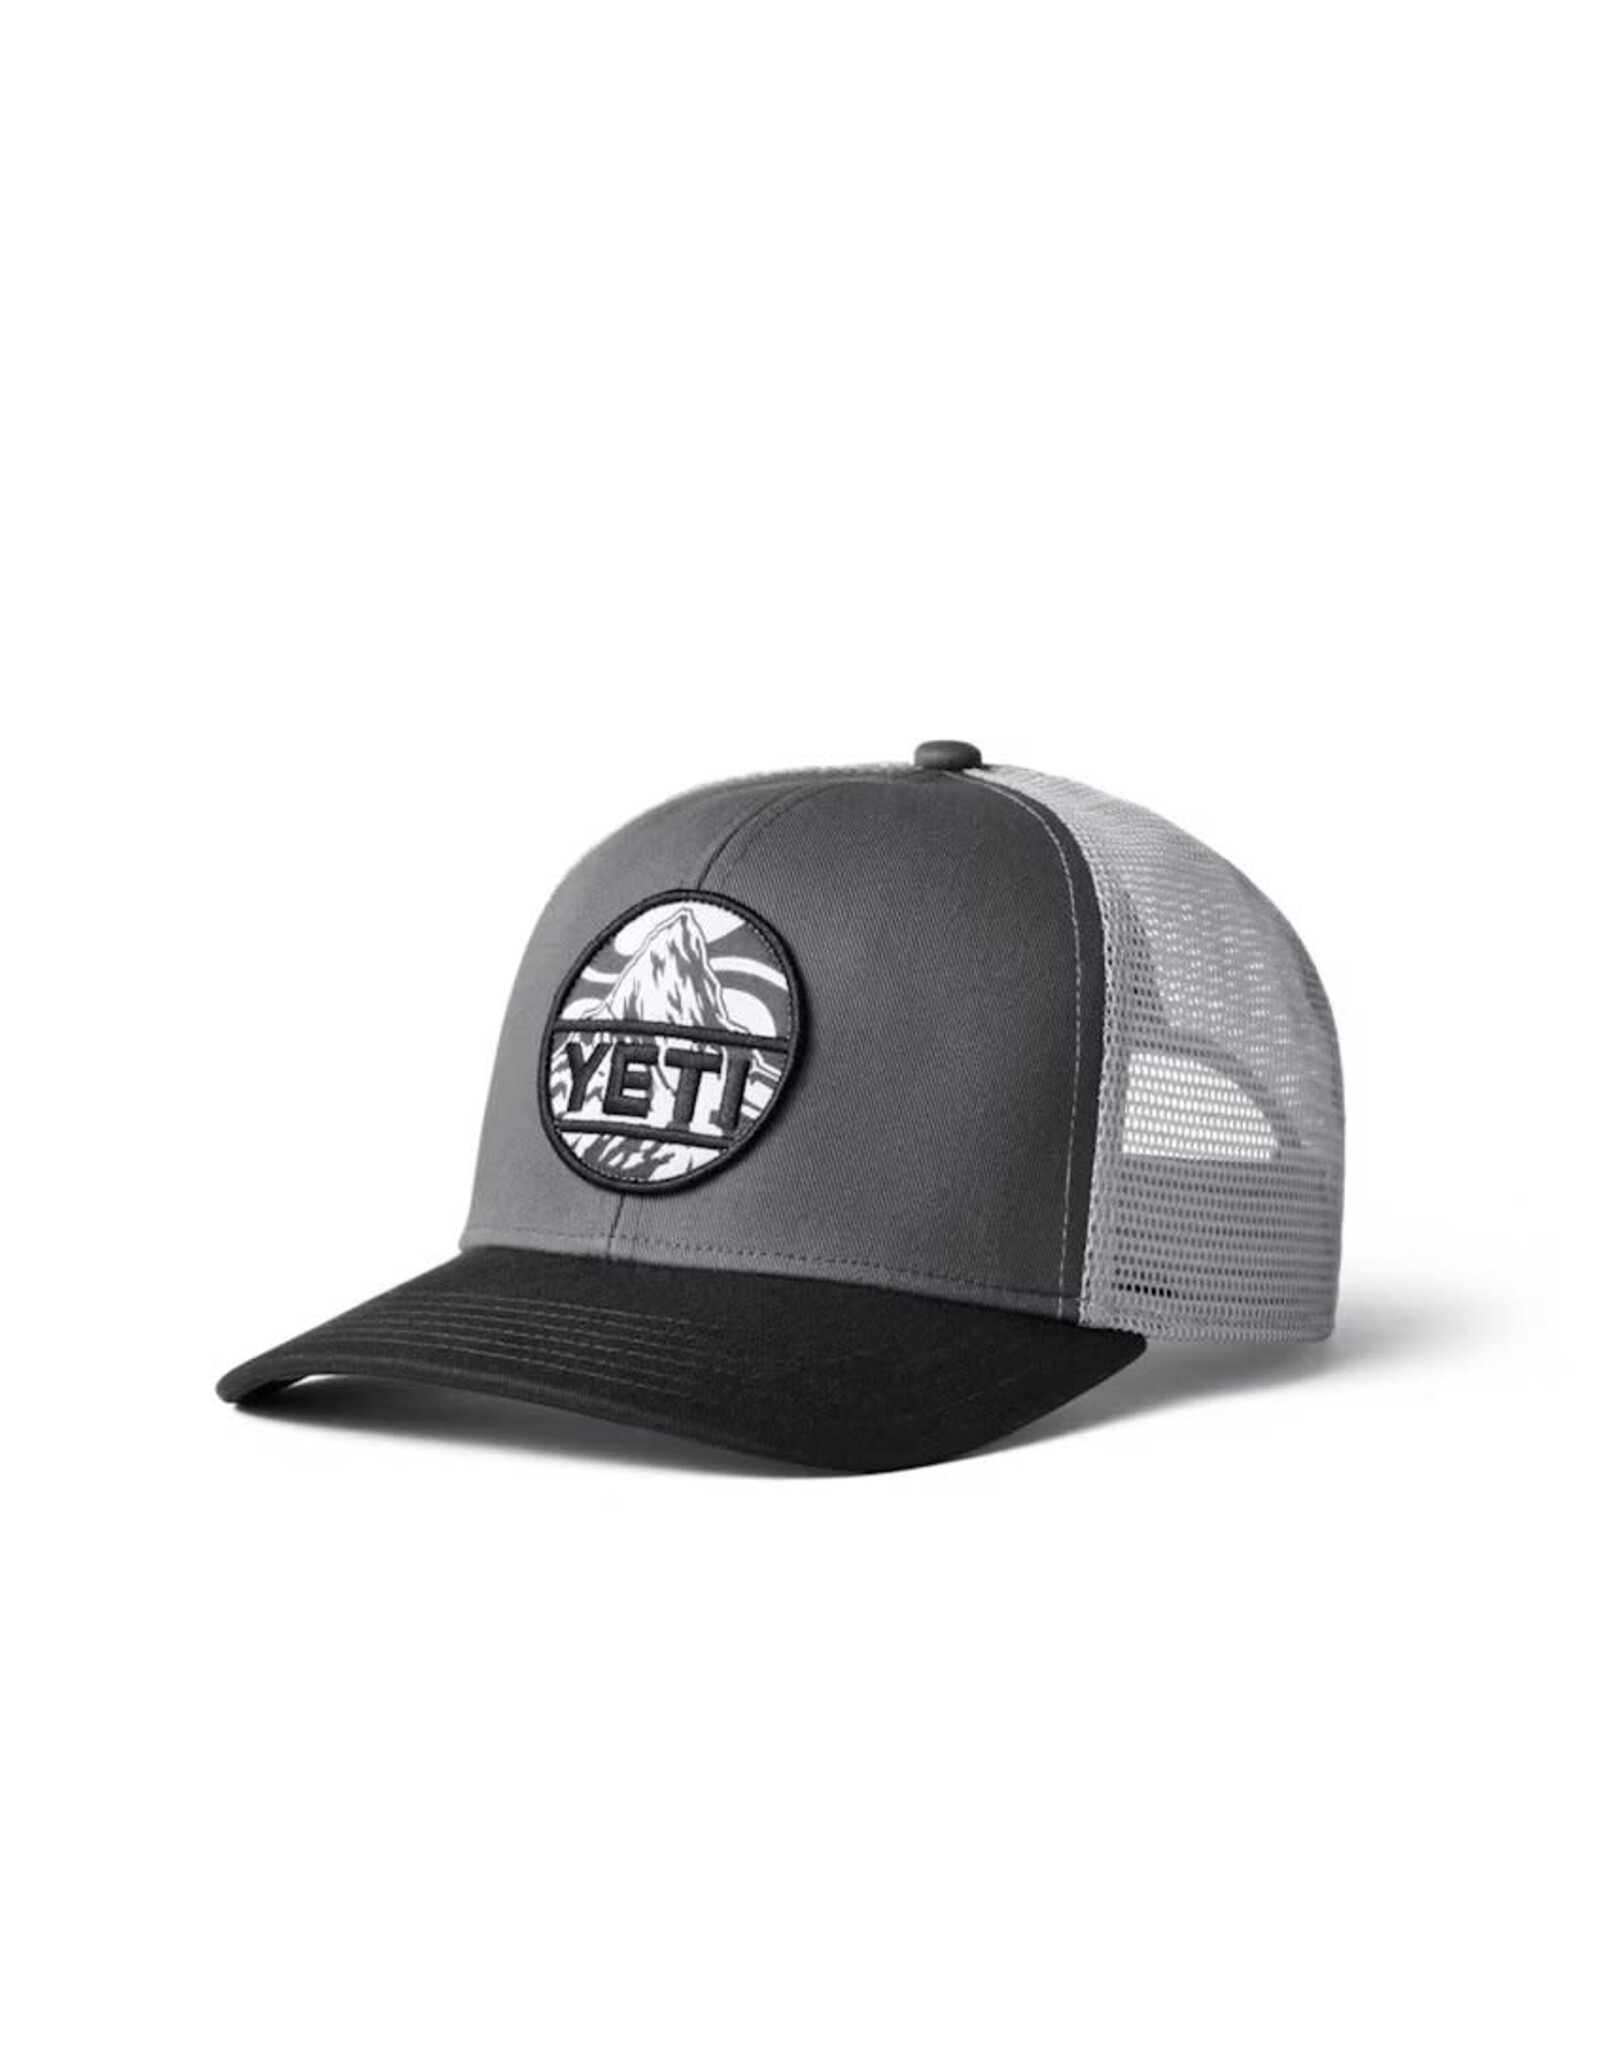 Yeti Yeti Mountain Badge Trucker Hat - Black